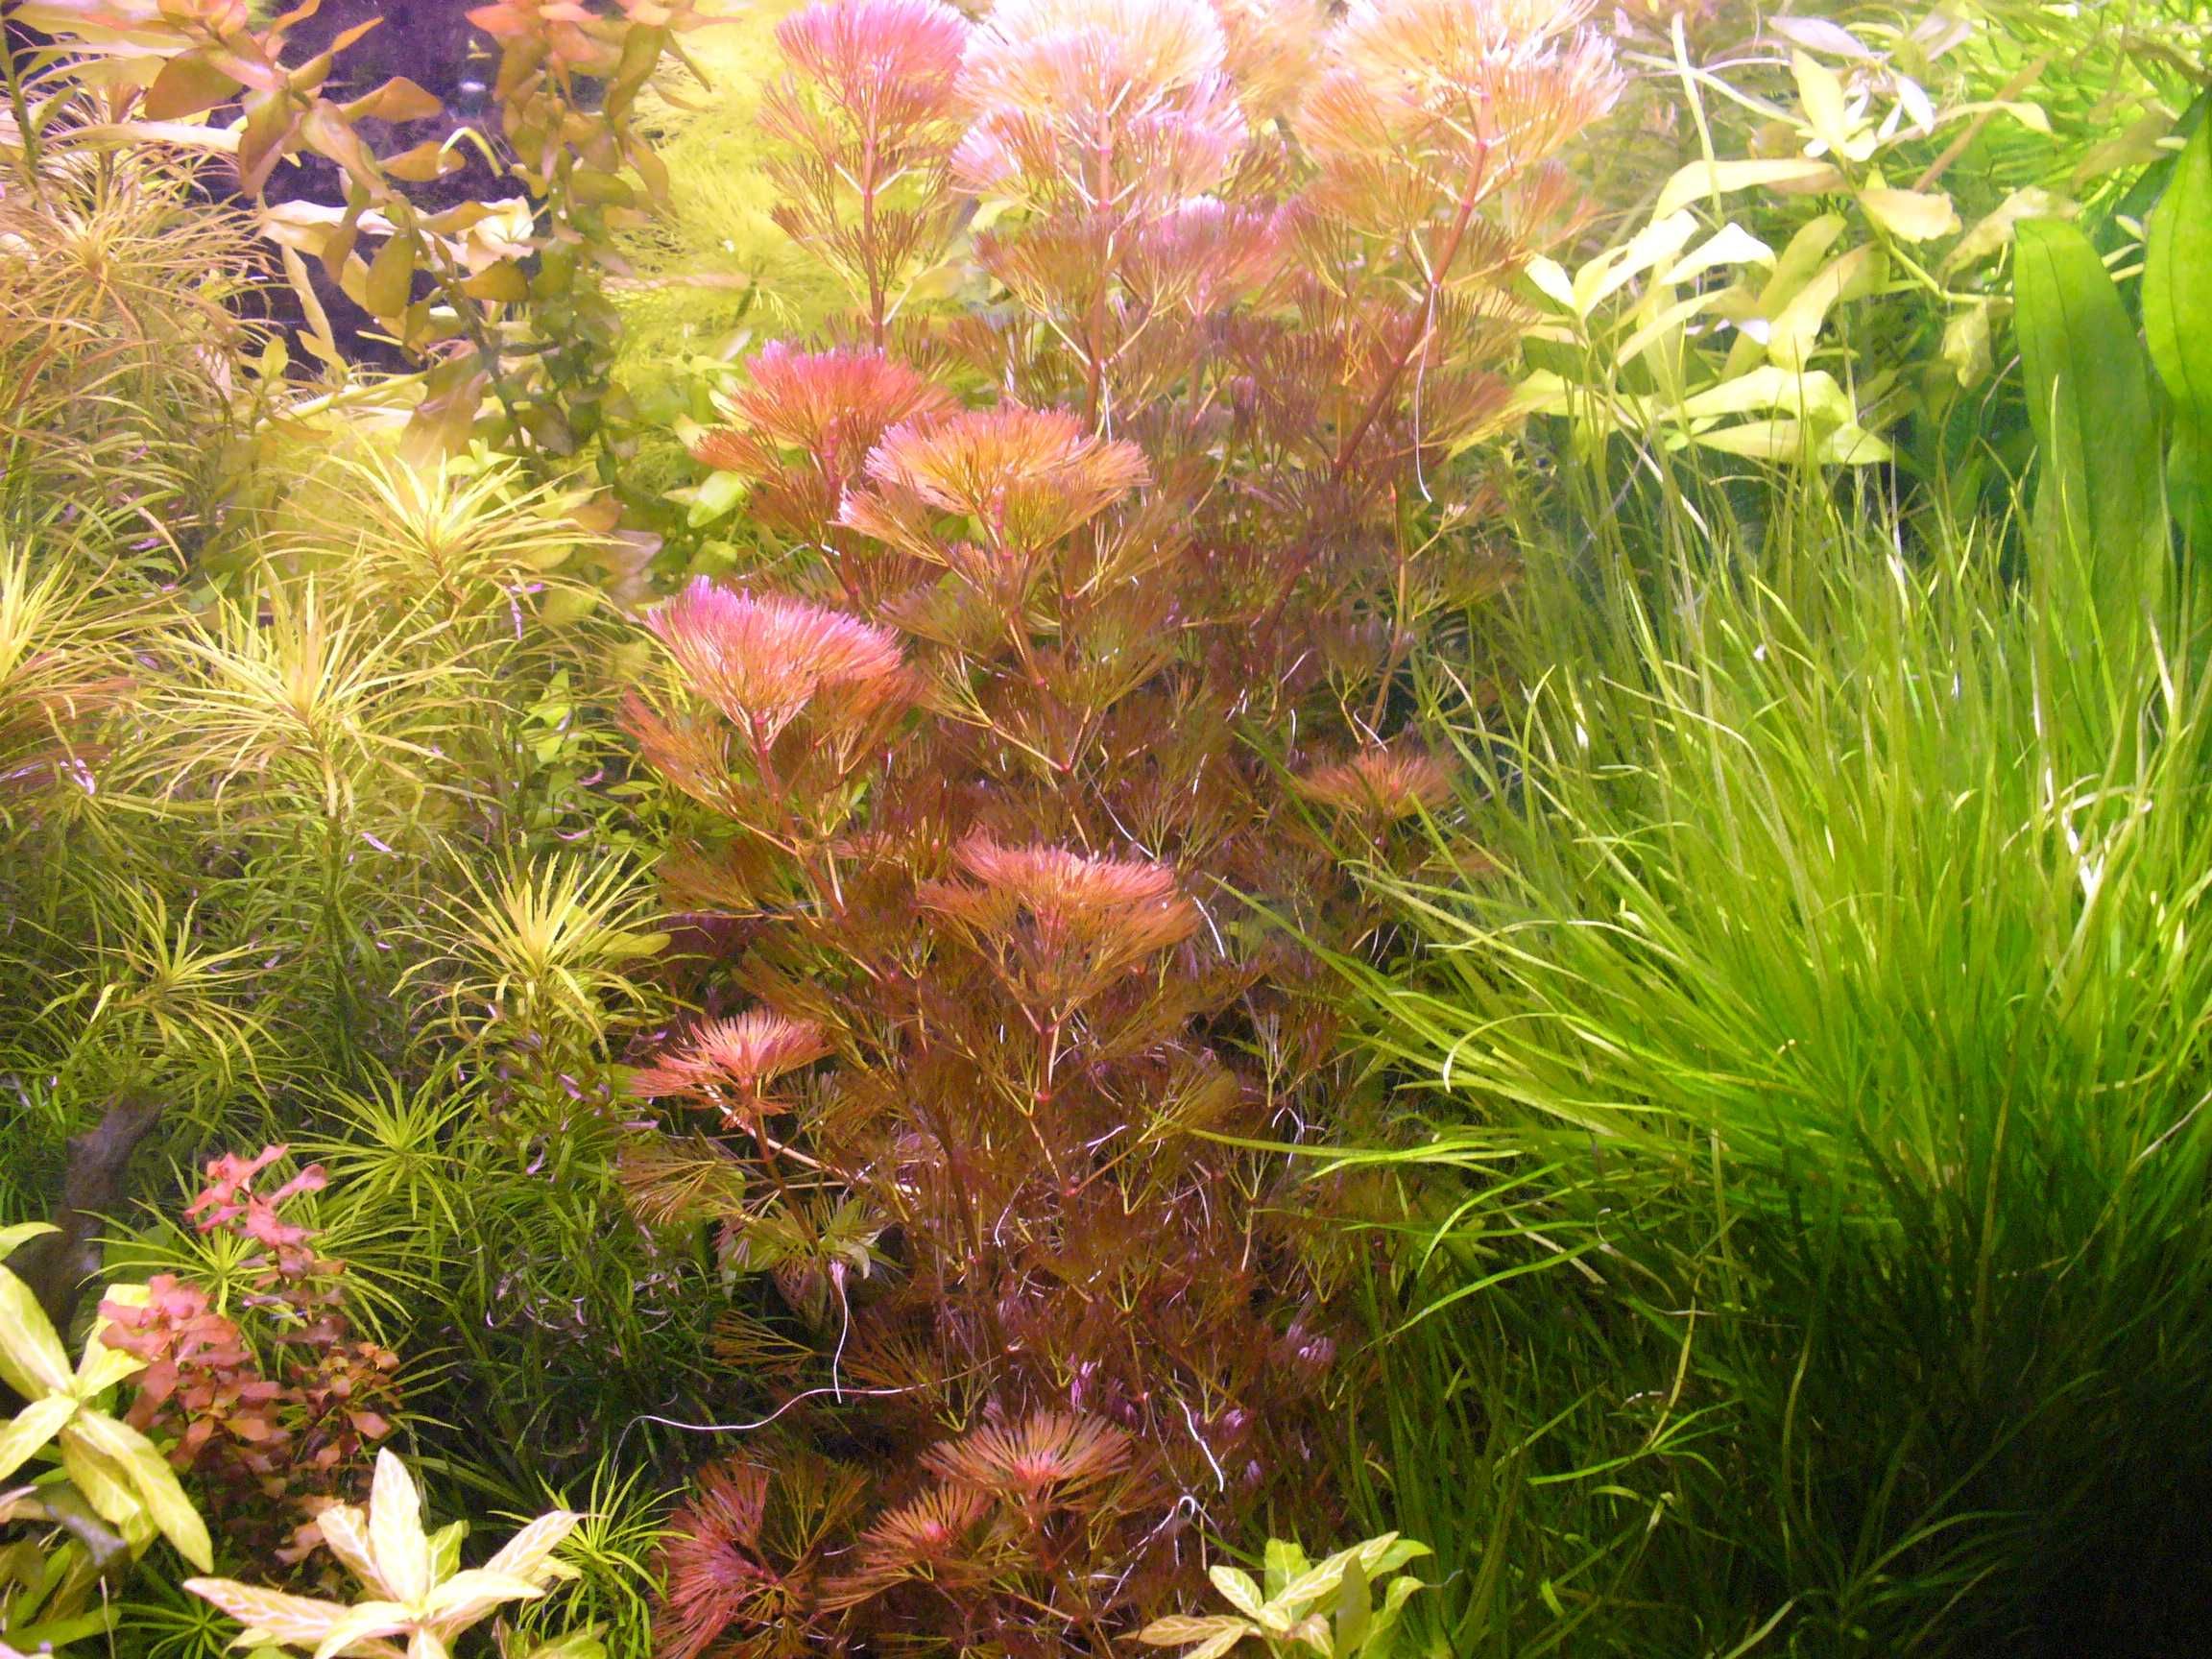 Cabomba czerwona-możliwe zestawy roślin